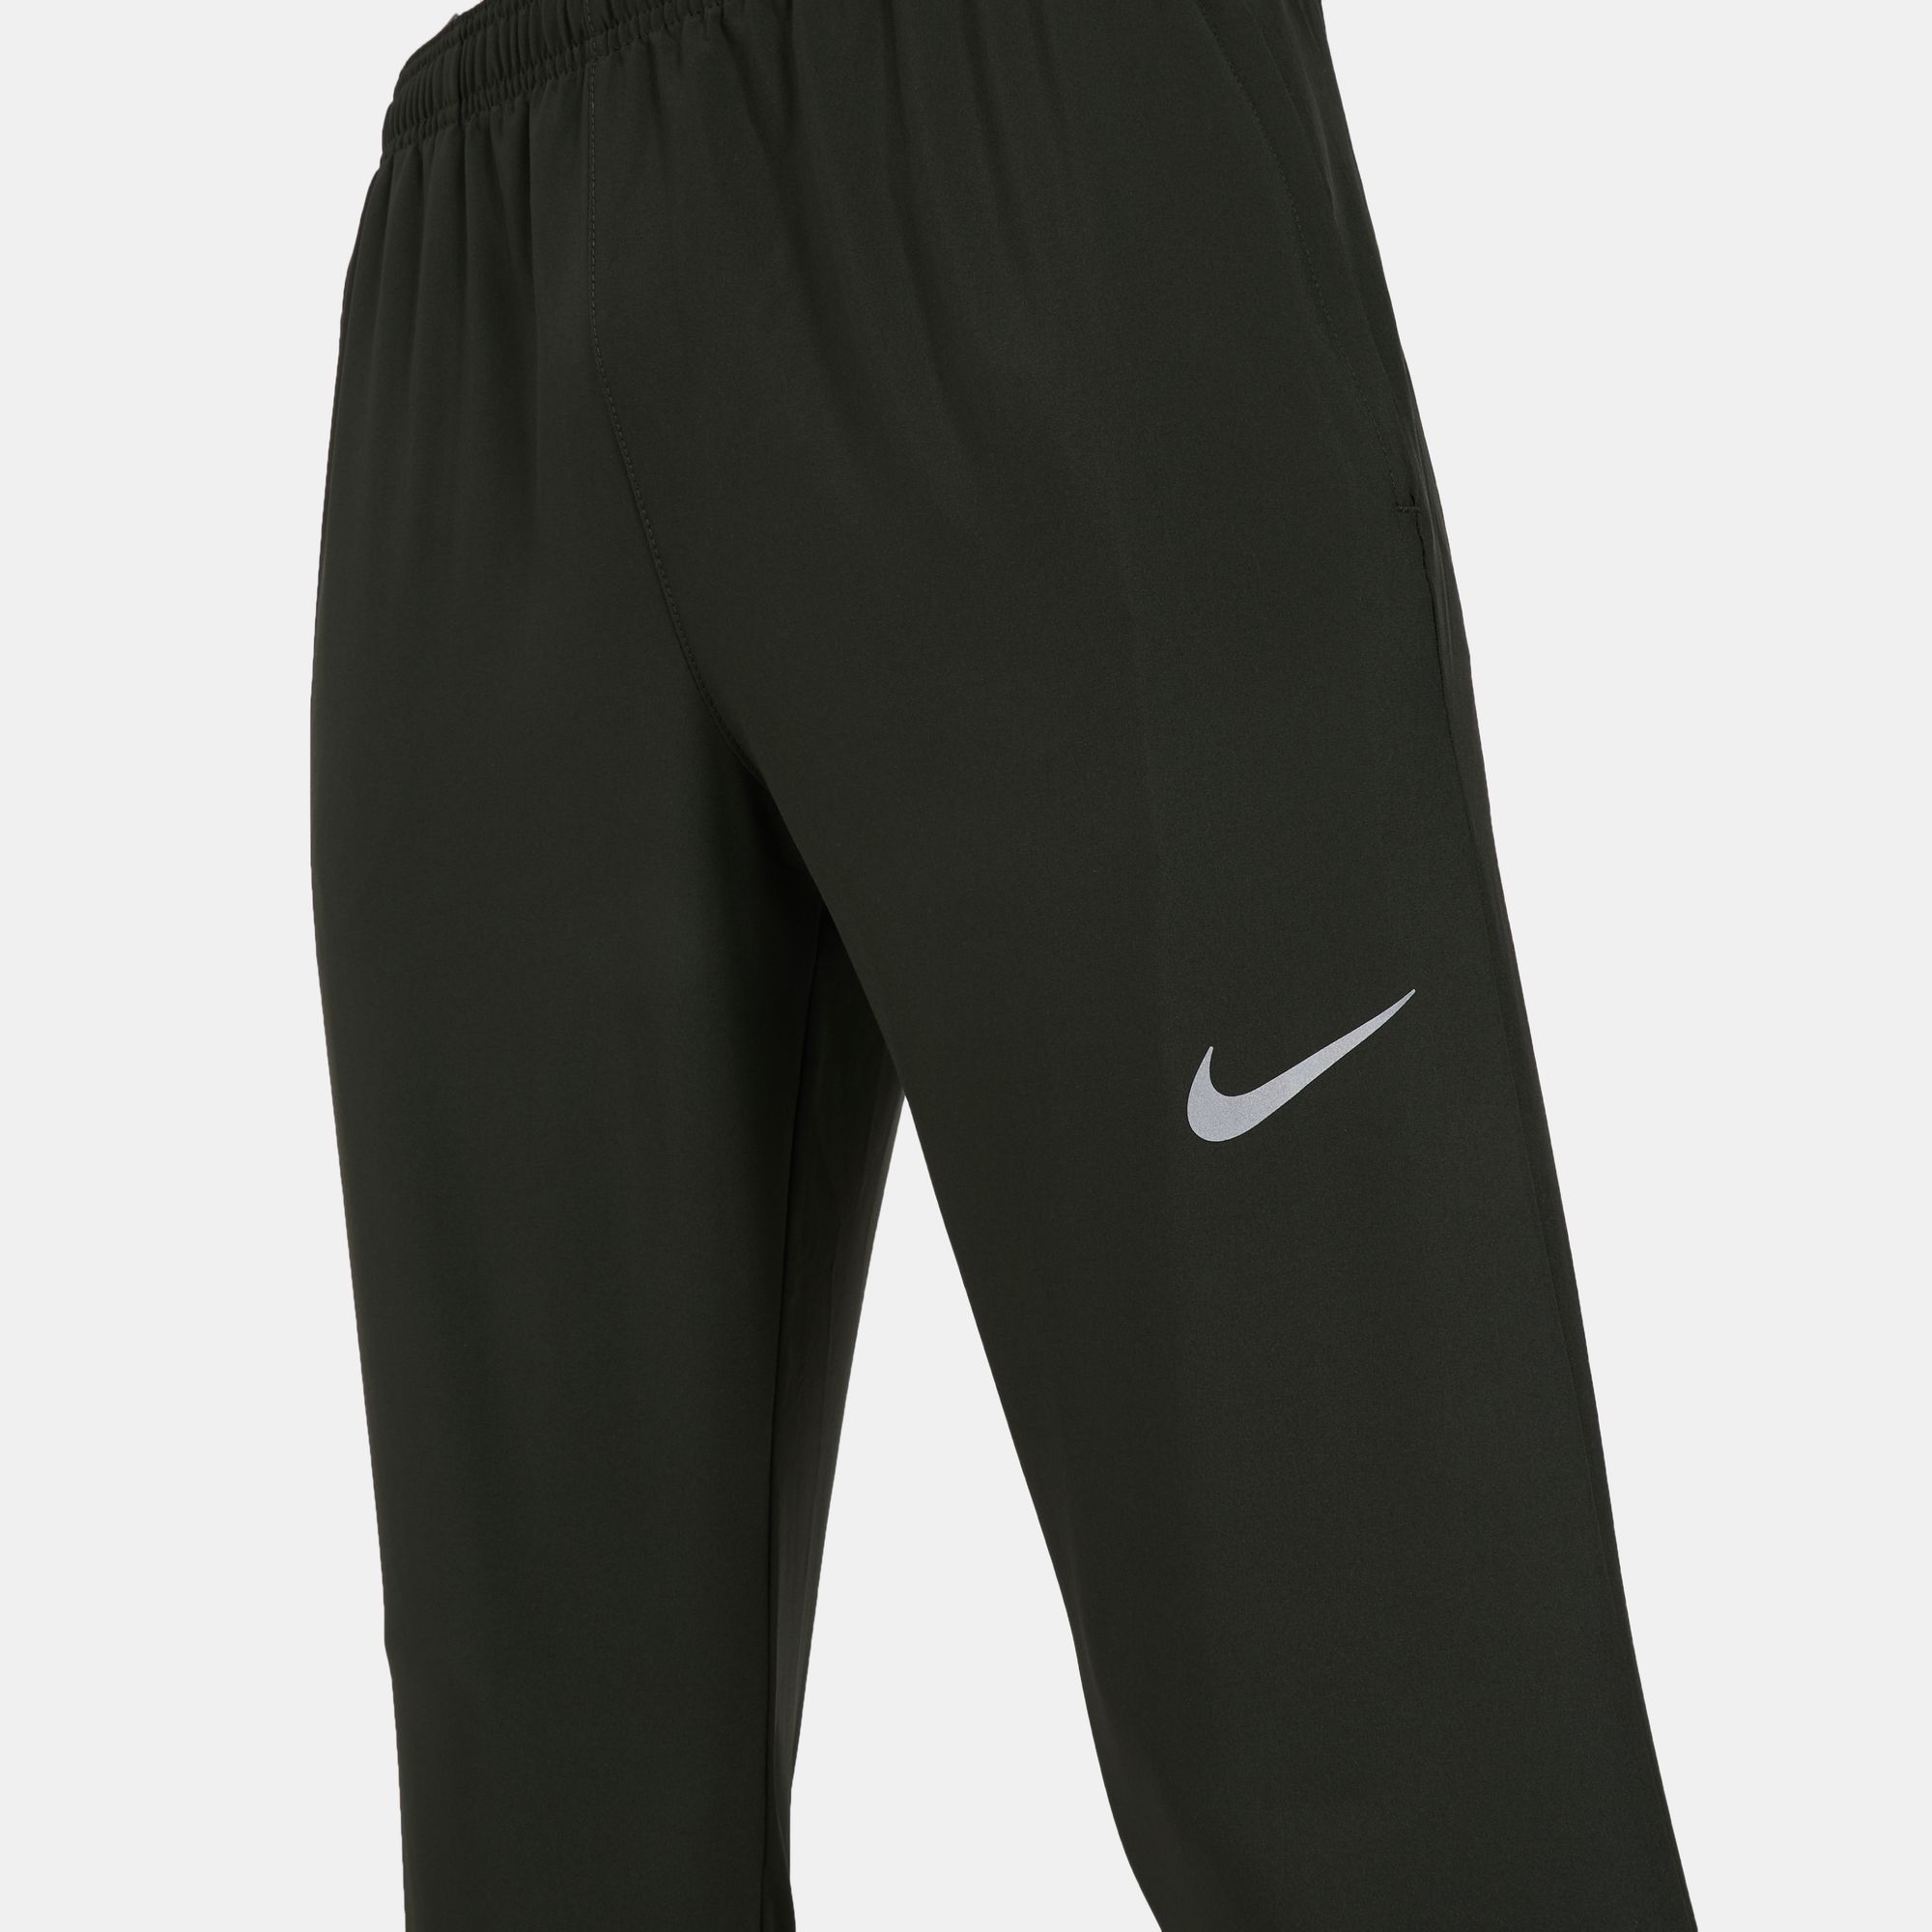 Nike Men's Essential Track Pants | Pants | Clothing | Men's Sale | Sale ...